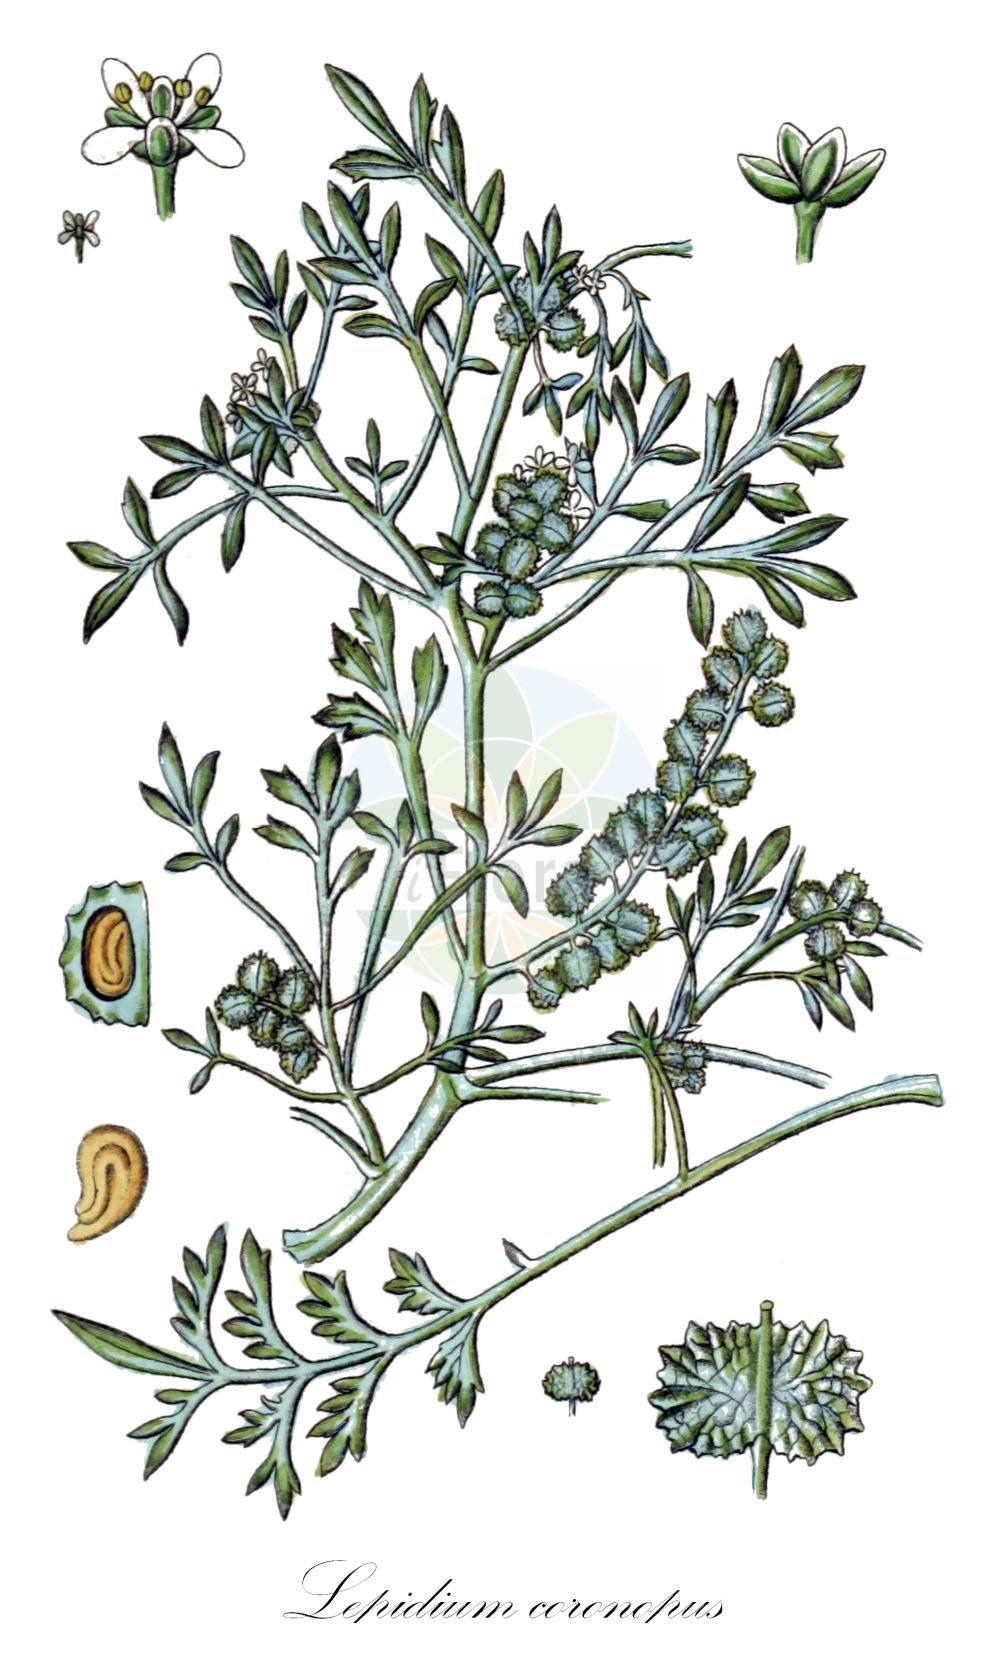 Historische Abbildung von Lepidium coronopus (Niederliegender Krähenfuß - Swine-cress). Das Bild zeigt Blatt, Bluete, Frucht und Same. ---- Historical Drawing of Lepidium coronopus (Niederliegender Krähenfuß - Swine-cress). The image is showing leaf, flower, fruit and seed.(Lepidium coronopus,Niederliegender Krähenfuß,Swine-cress,Coronopus procumbens,Coronopus ruelli,Coronopus ruellii,Coronopus squamatus,Coronopus verrucarius,Lepidium coronopus,Lepidium squamatum,Senebiera coronopus,Niederliegender Kraehenfuss,Gewoehnlicher Kraehenfuss,Swine-cress,Greater Swinecress,Lepidium,Kresse,Pepperweed,Brassicaceae,Kreuzblütler,Cabbage family,Blatt,Bluete,Frucht,Same,leaf,flower,fruit,seed,Sturm (1796f))